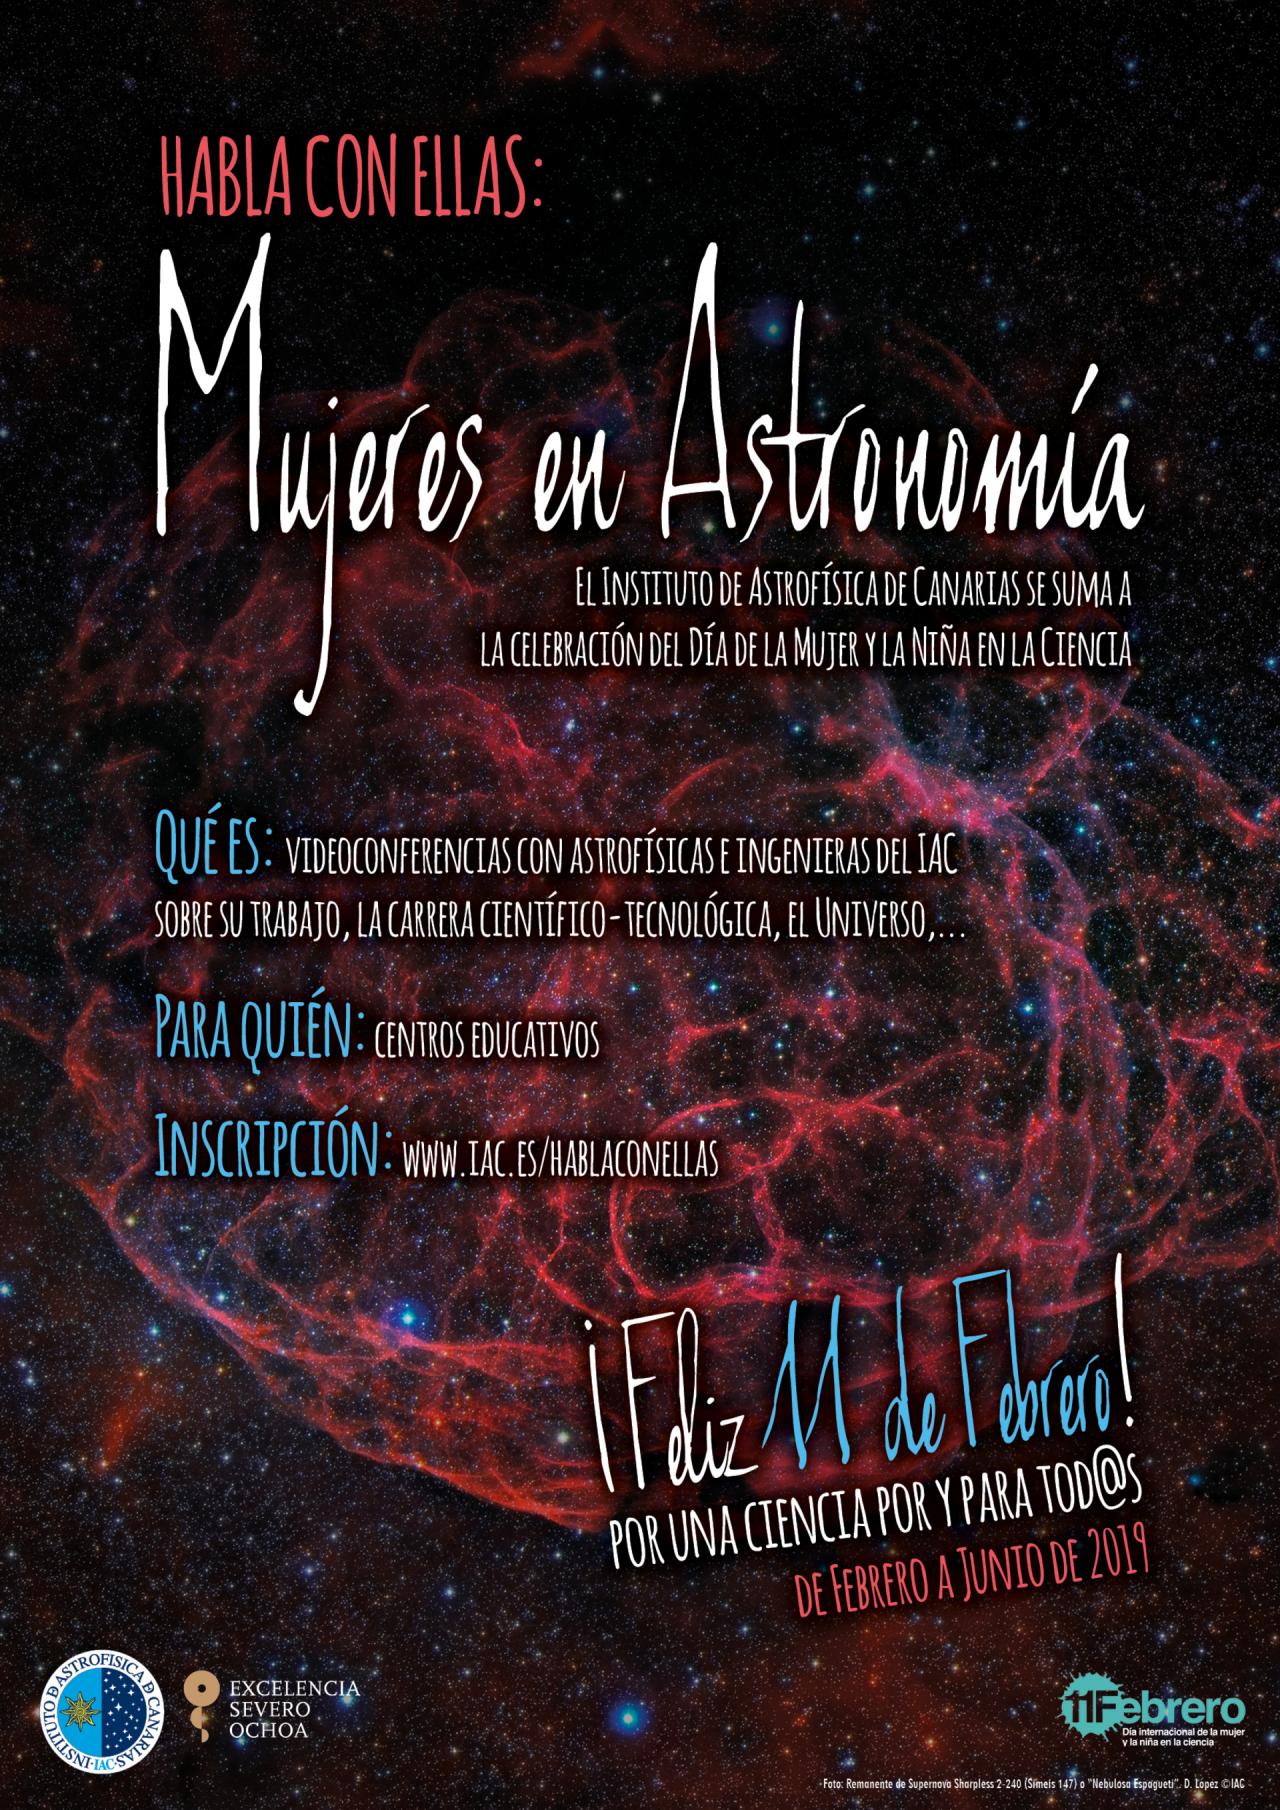 Promover vocaciones científicas y tecnológicas entre las más jóvenes |  Instituto de Astrofísica de Canarias • IAC